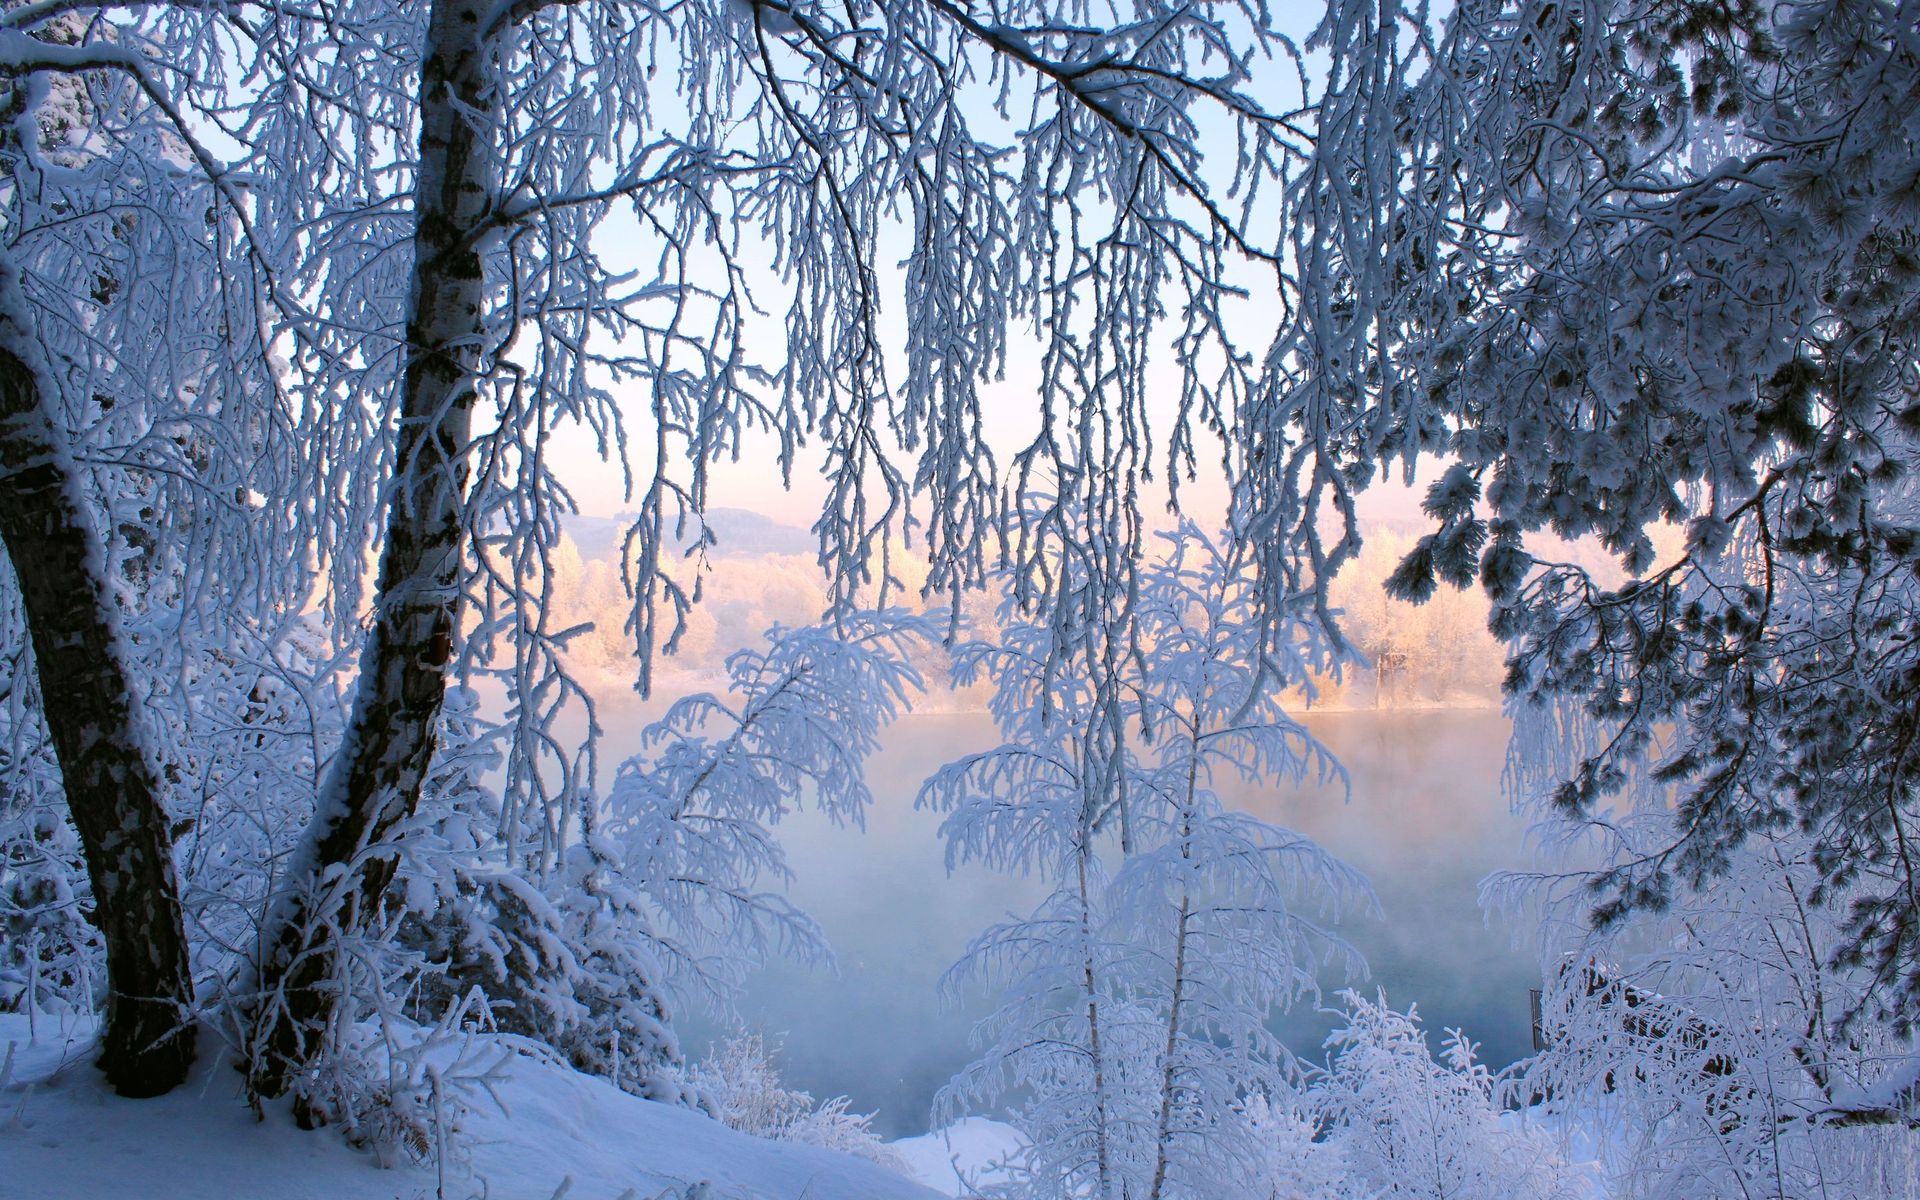 Скачать обои бесплатно Зима, Снег, Гора, Лес, Земля/природа картинка на рабочий стол ПК